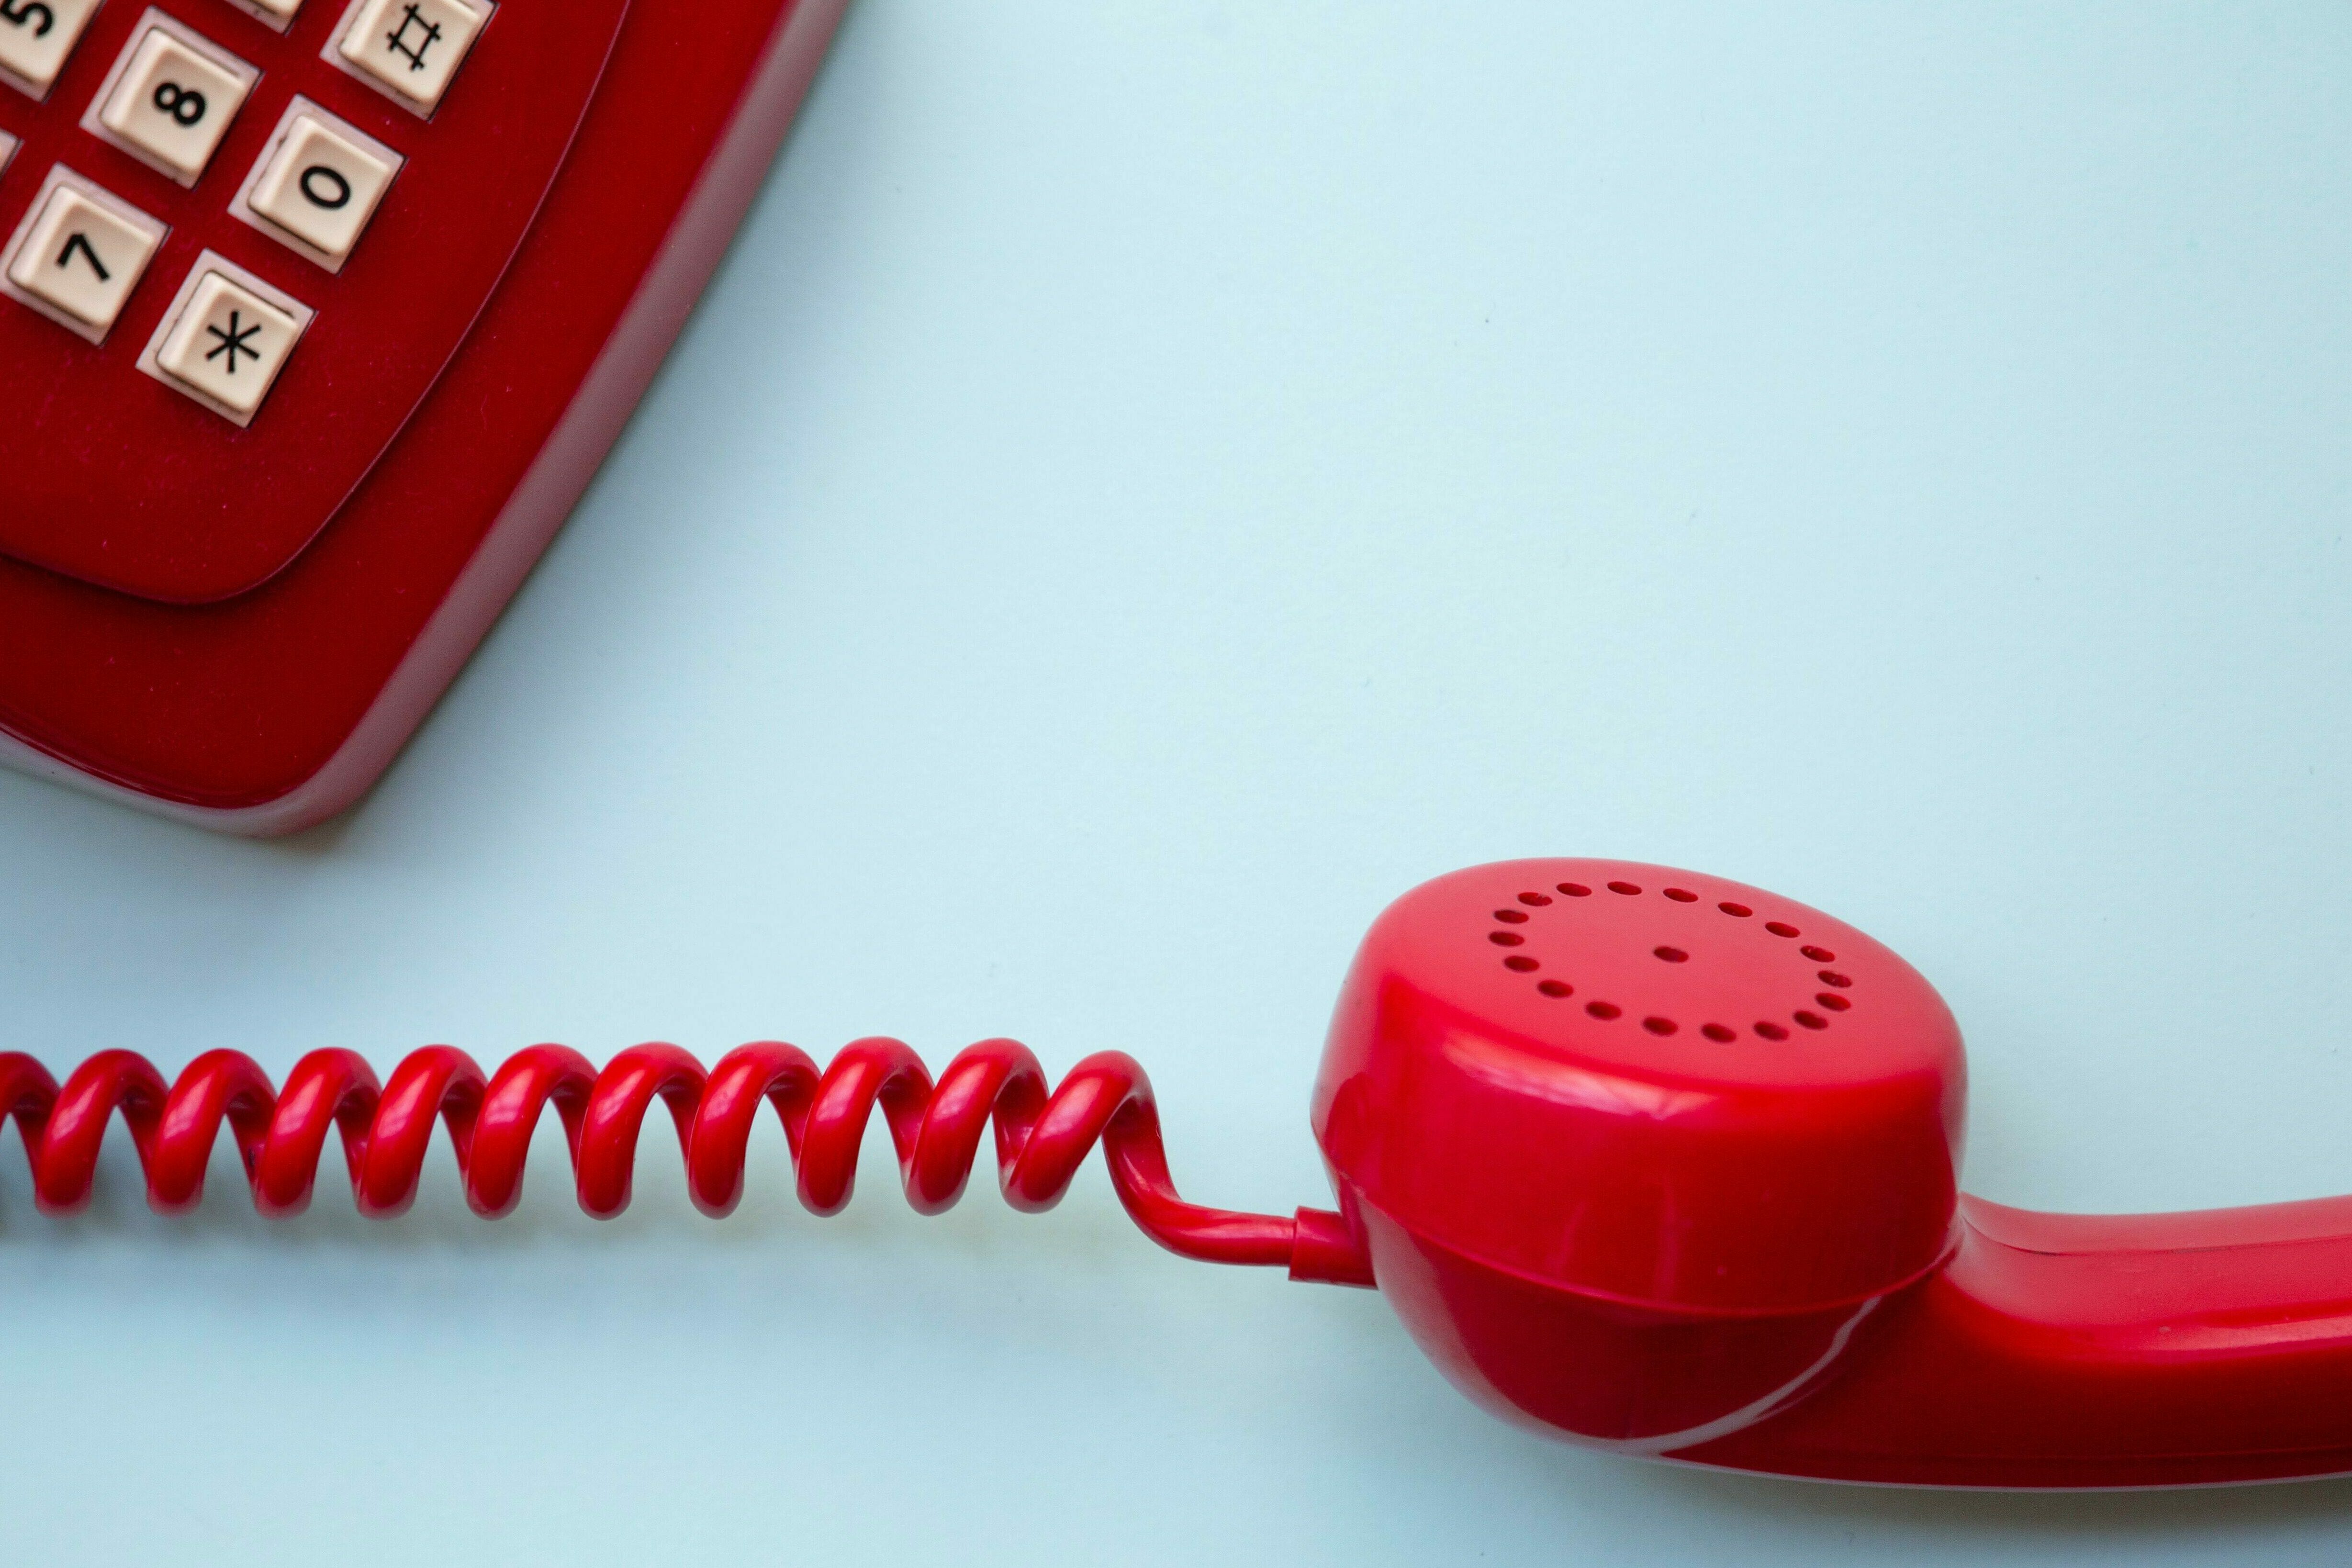 Ein rotes Telefon mit abgehobenem Hörer auf hellblauem Hintergrund.